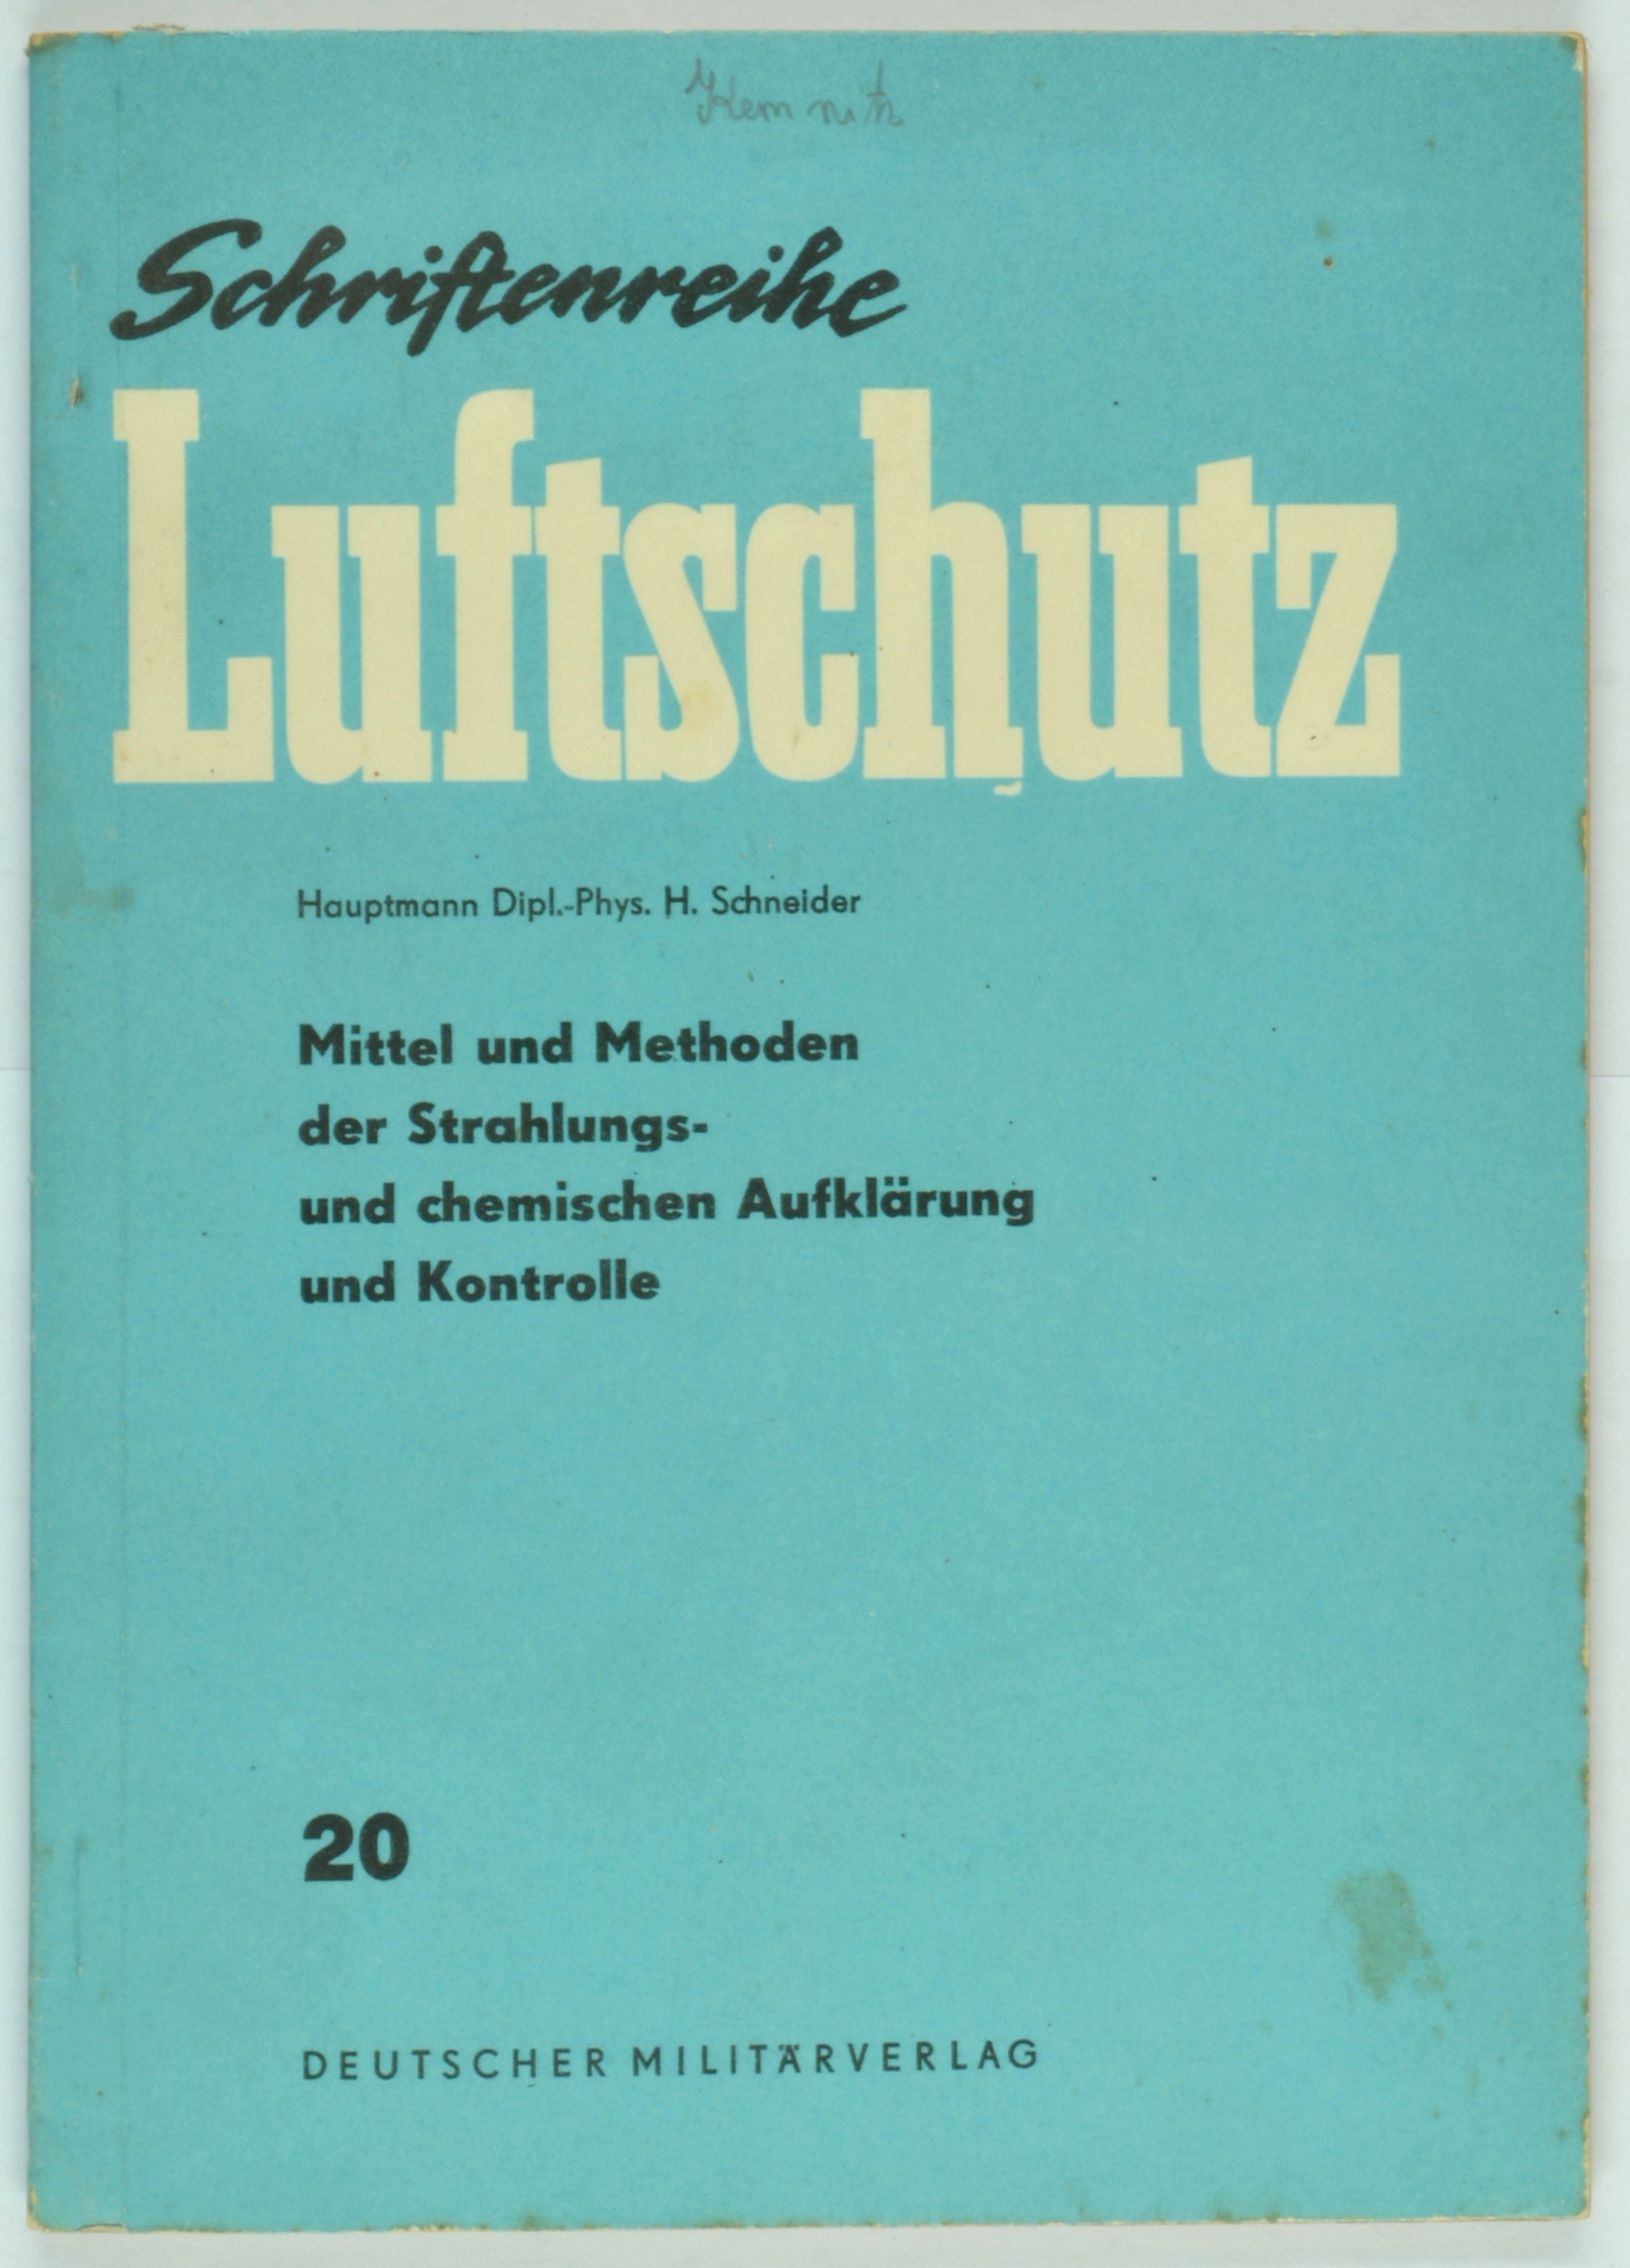 Broschüre "Schriftenreihe Luftschutz" 20 (DDR Geschichtsmuseum im Dokumentationszentrum Perleberg CC BY-SA)